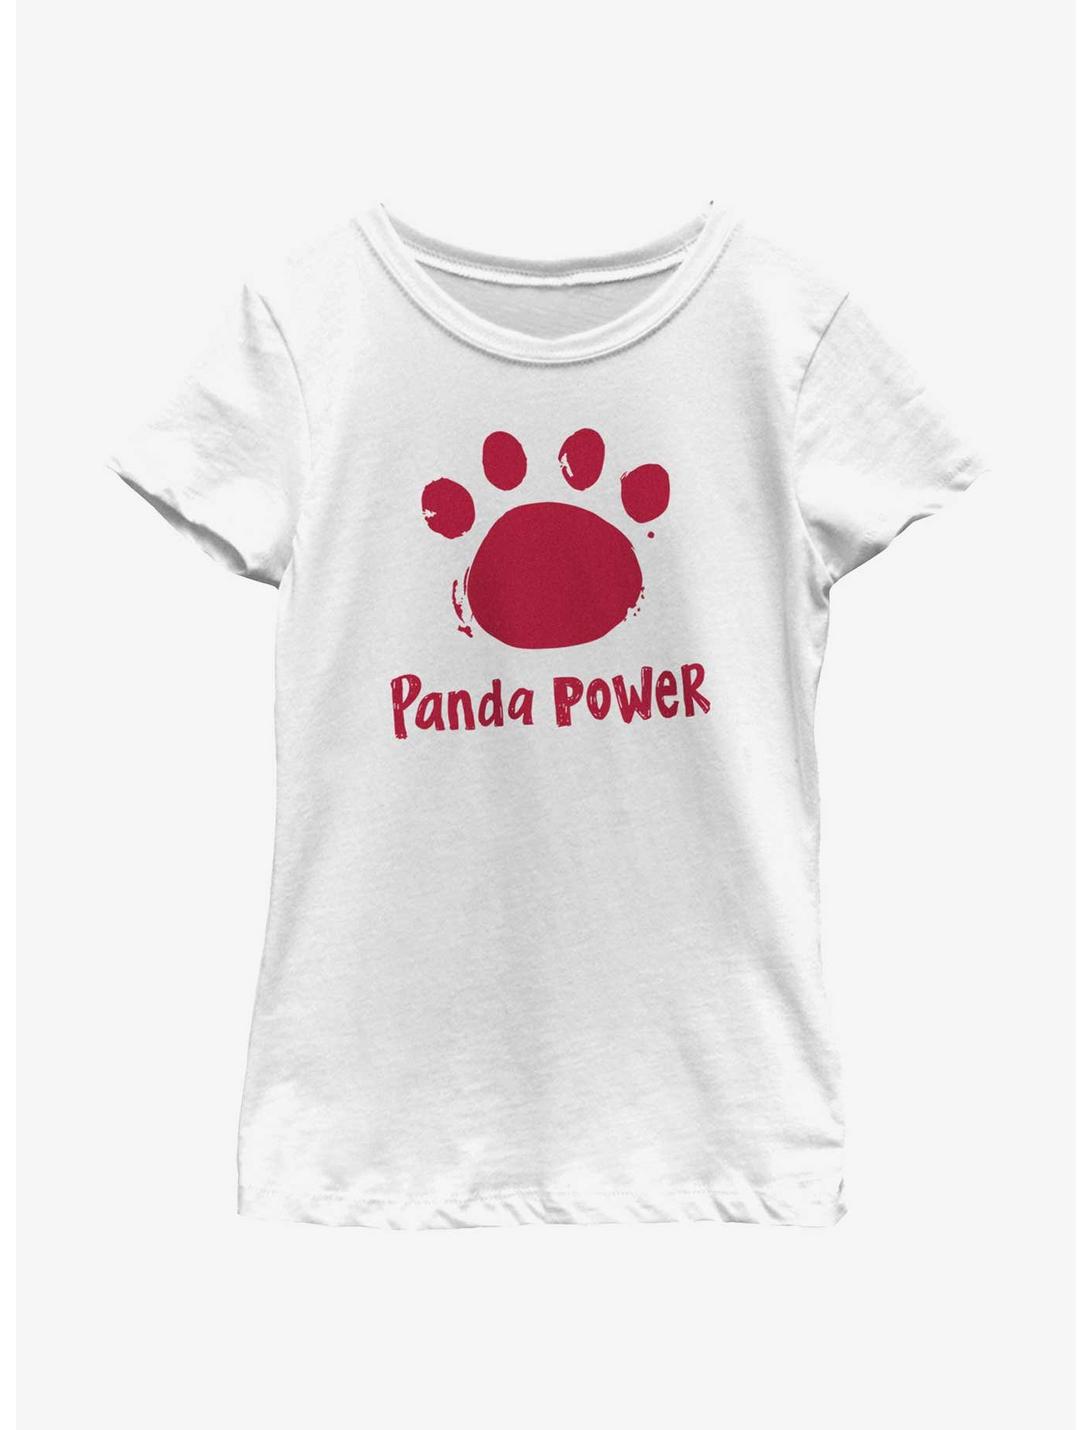 Disney Pixar Turning Red Panda Power Logo Youth Girls T-Shirt, WHITE, hi-res